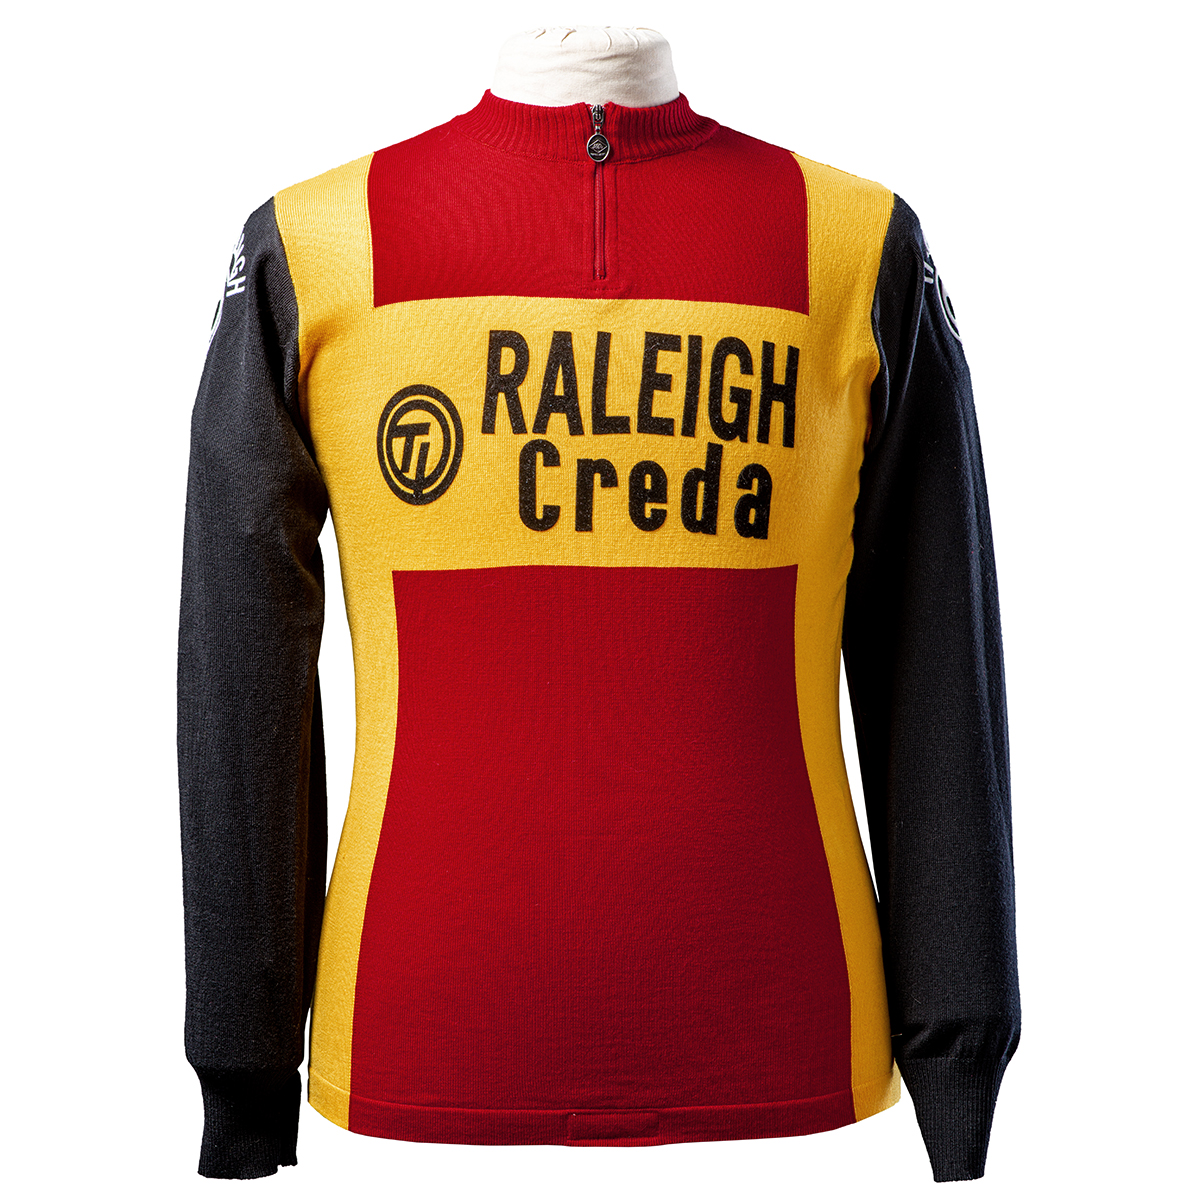 Op tijd spoel Broek Vintage cycling Jersey - Raleigh creda Team - Magliamo